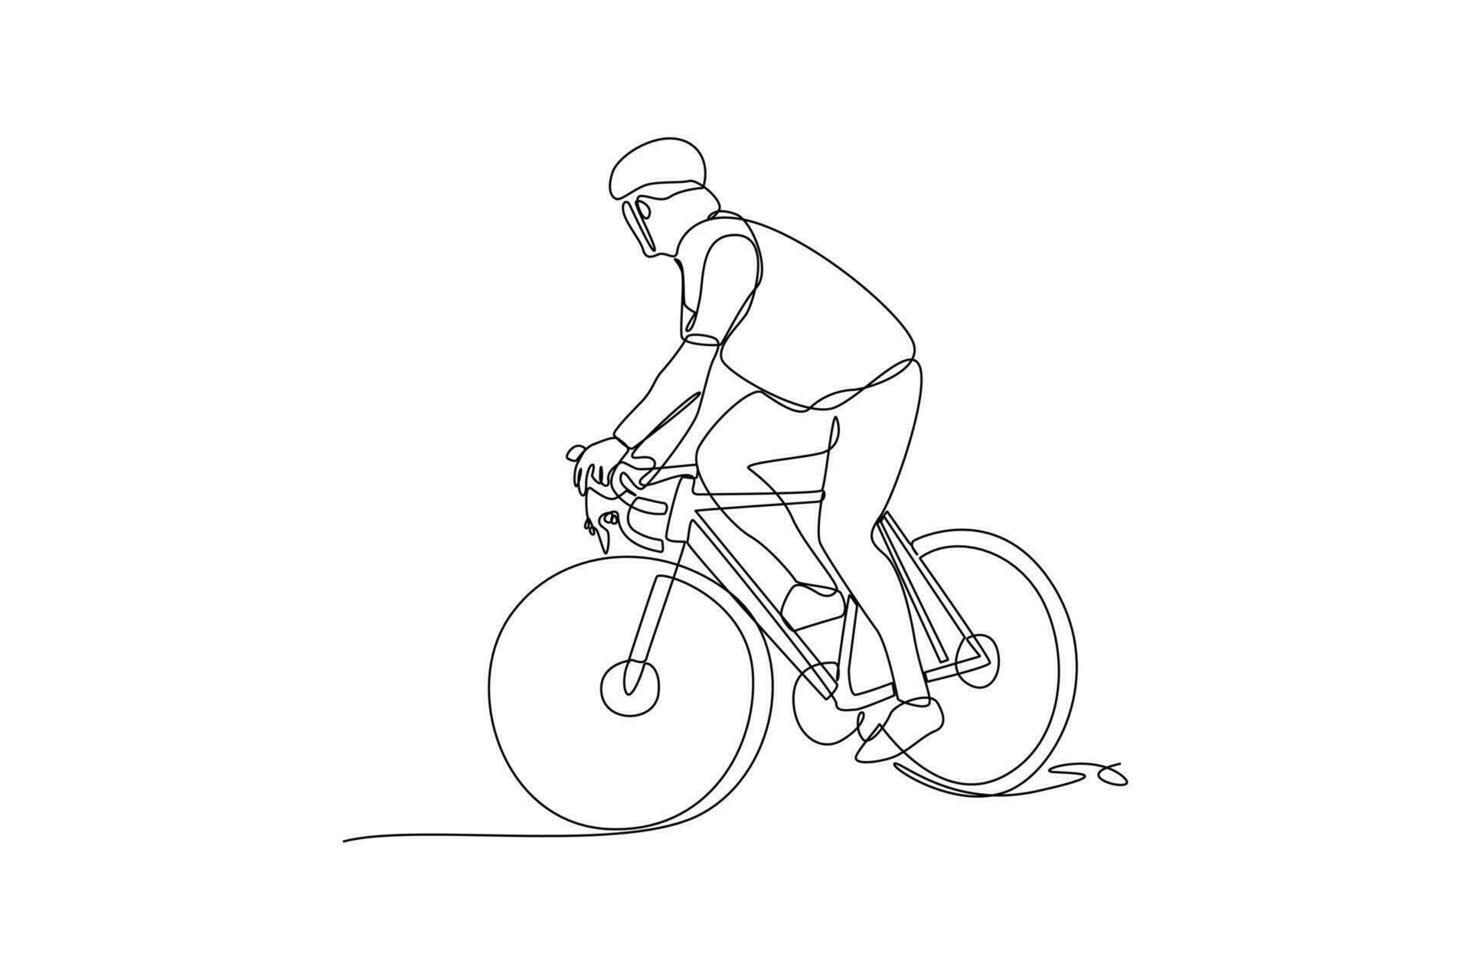 singolo uno linea disegno mondo bicicletta giorno su giugno 3. mondo bicicletta giorno concetto. continuo linea disegnare design grafico vettore illustrazione.